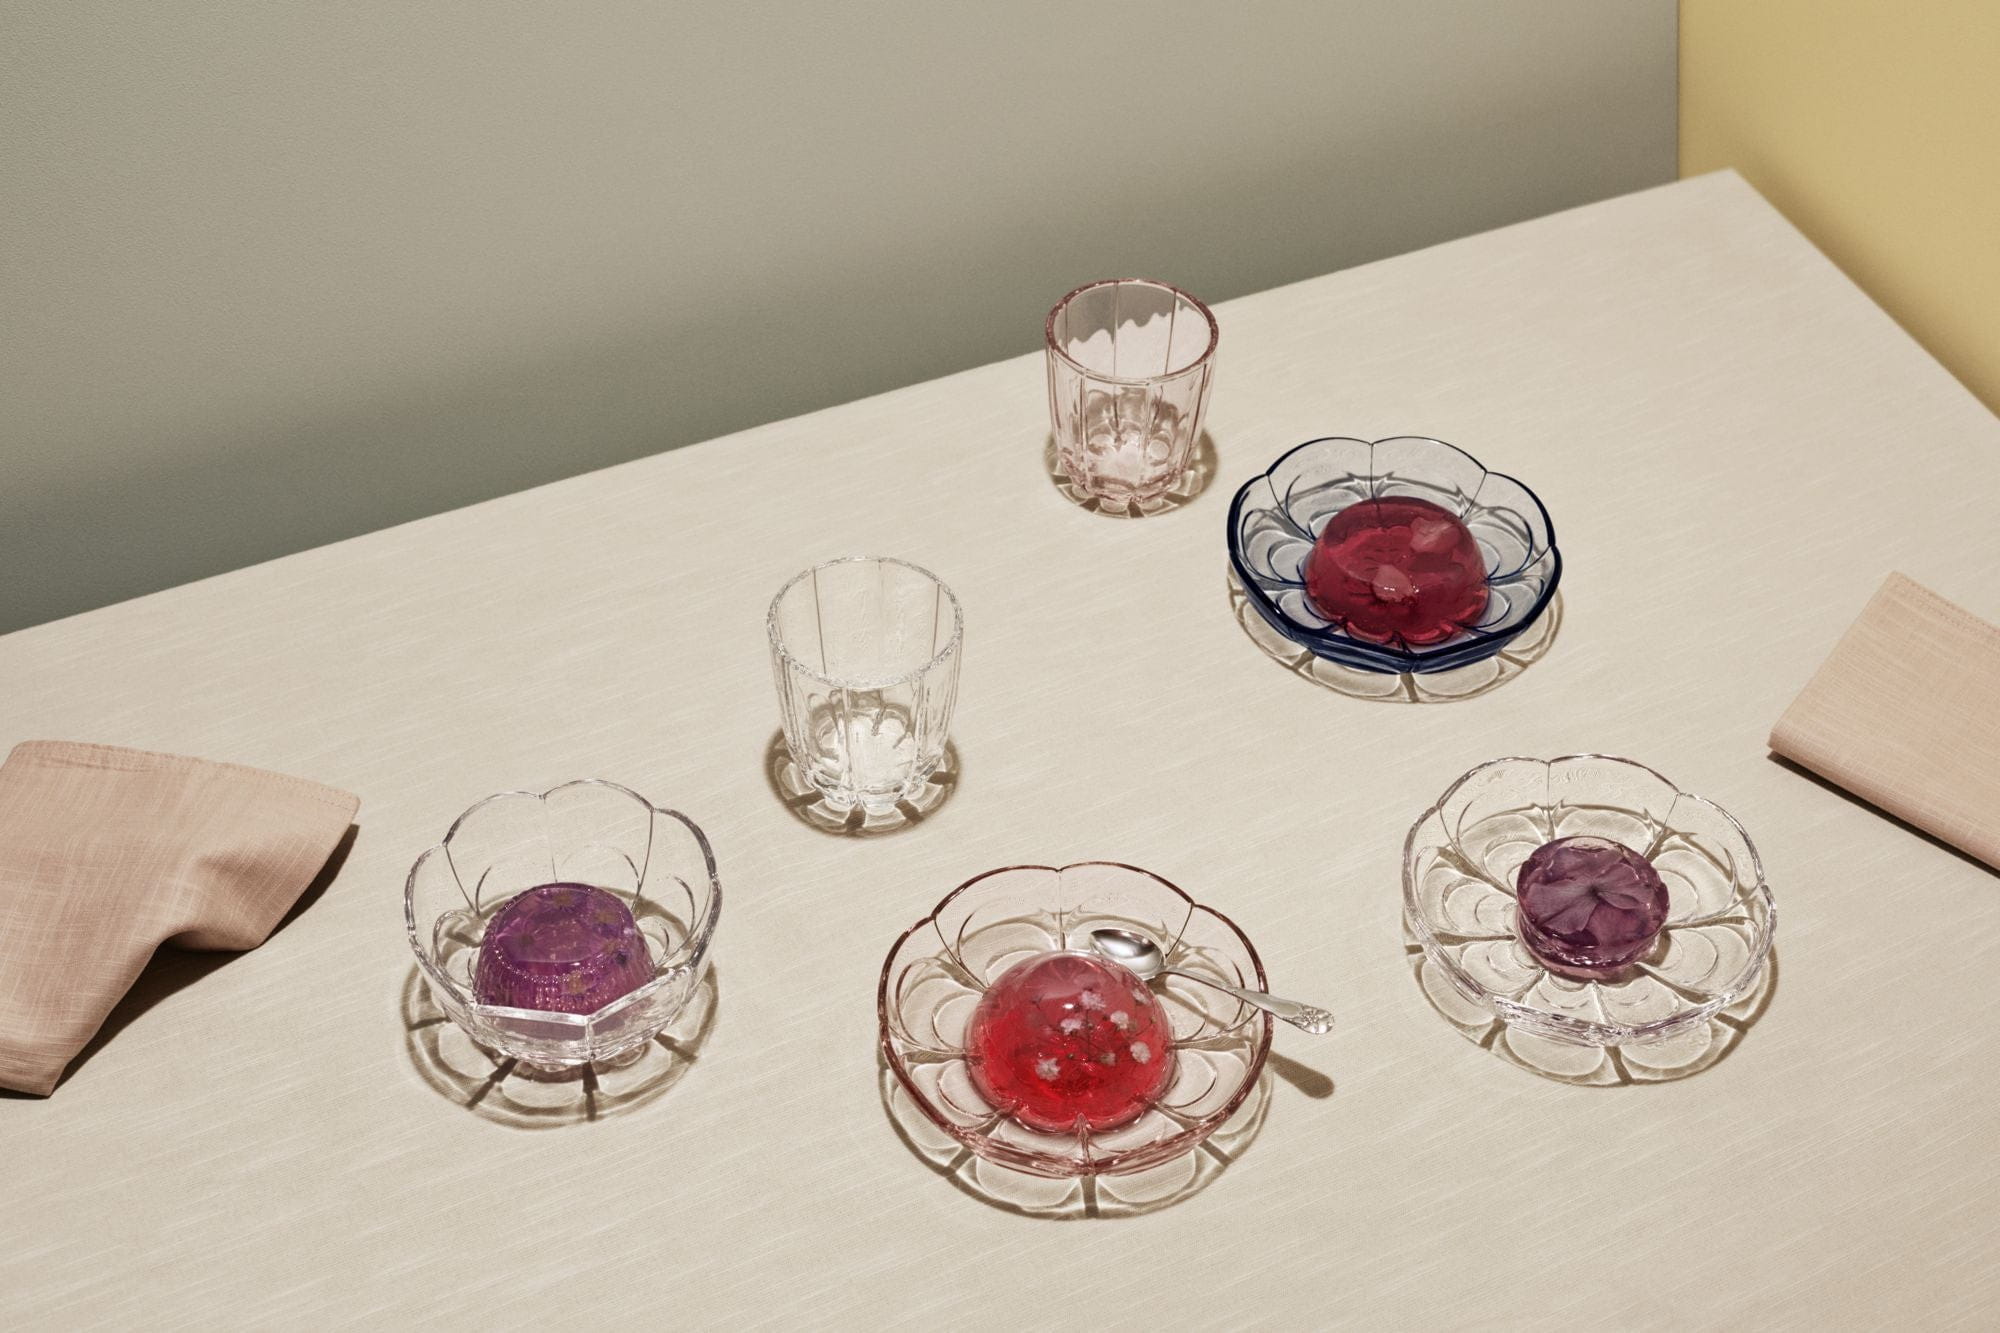 Holmegaard Ensemble de verre à eau Lily de 2 320 ml, rose